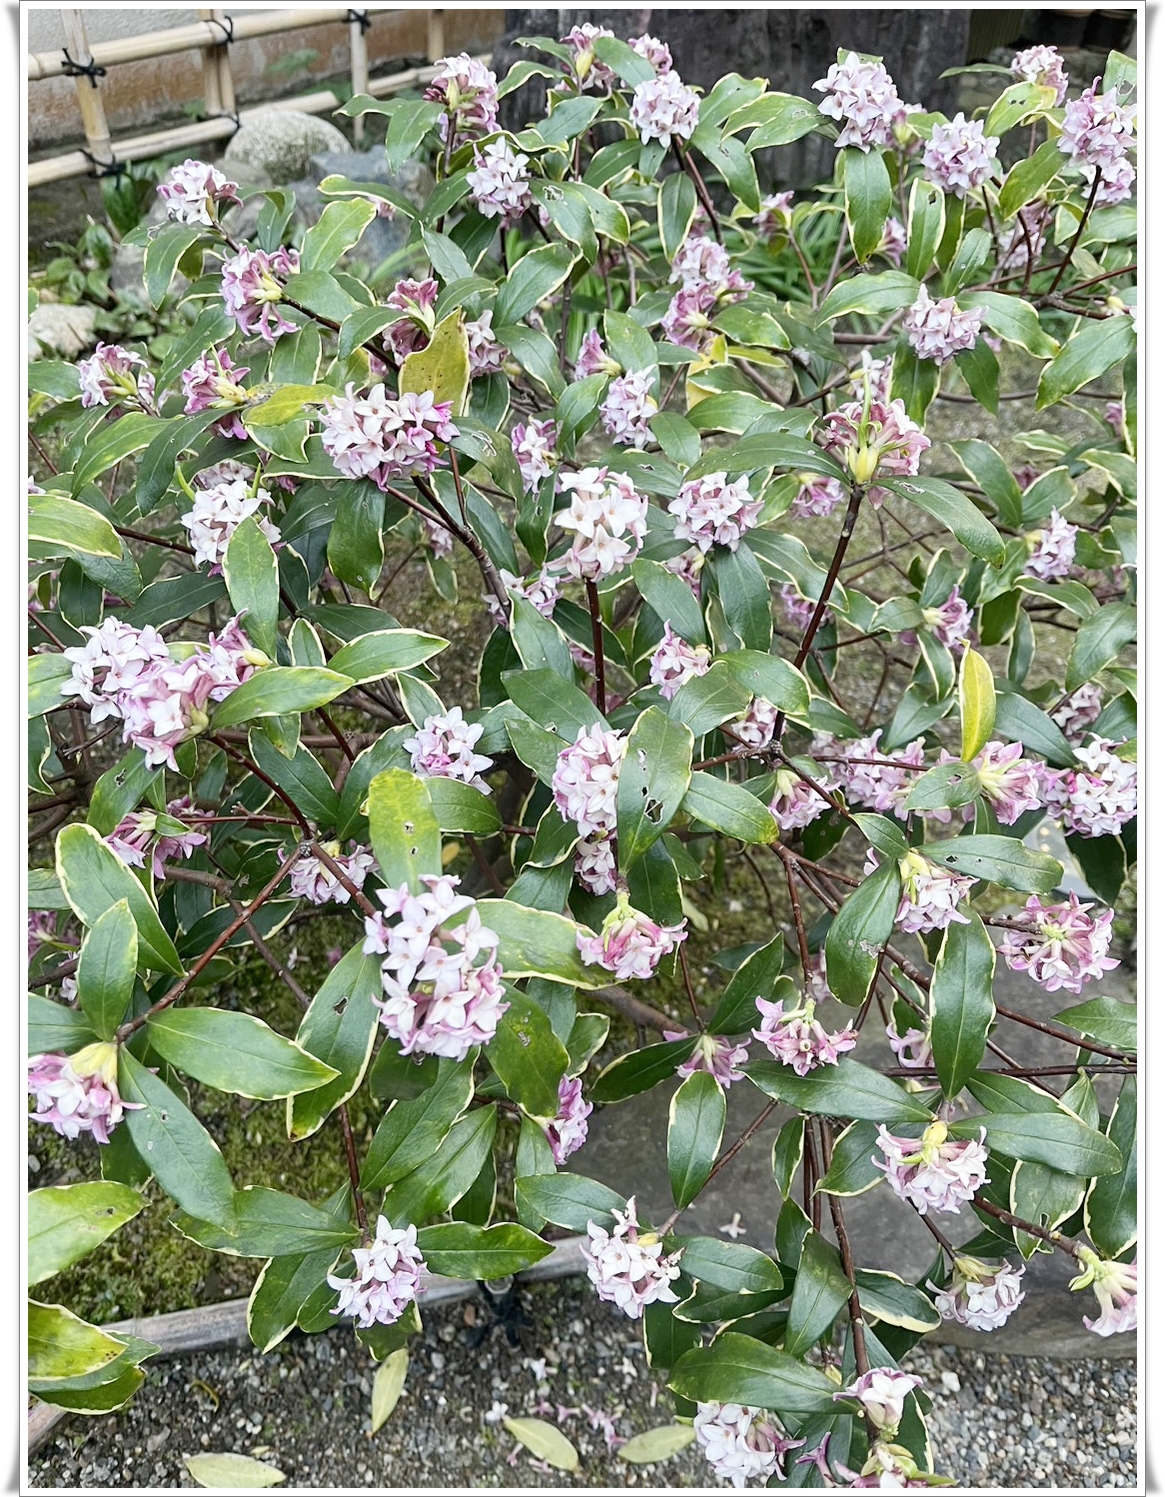 伏見区の小学生の英語教室 CEC英語教室 藤森教室に咲く、沈丁花です。英語で "daphne "といいます。